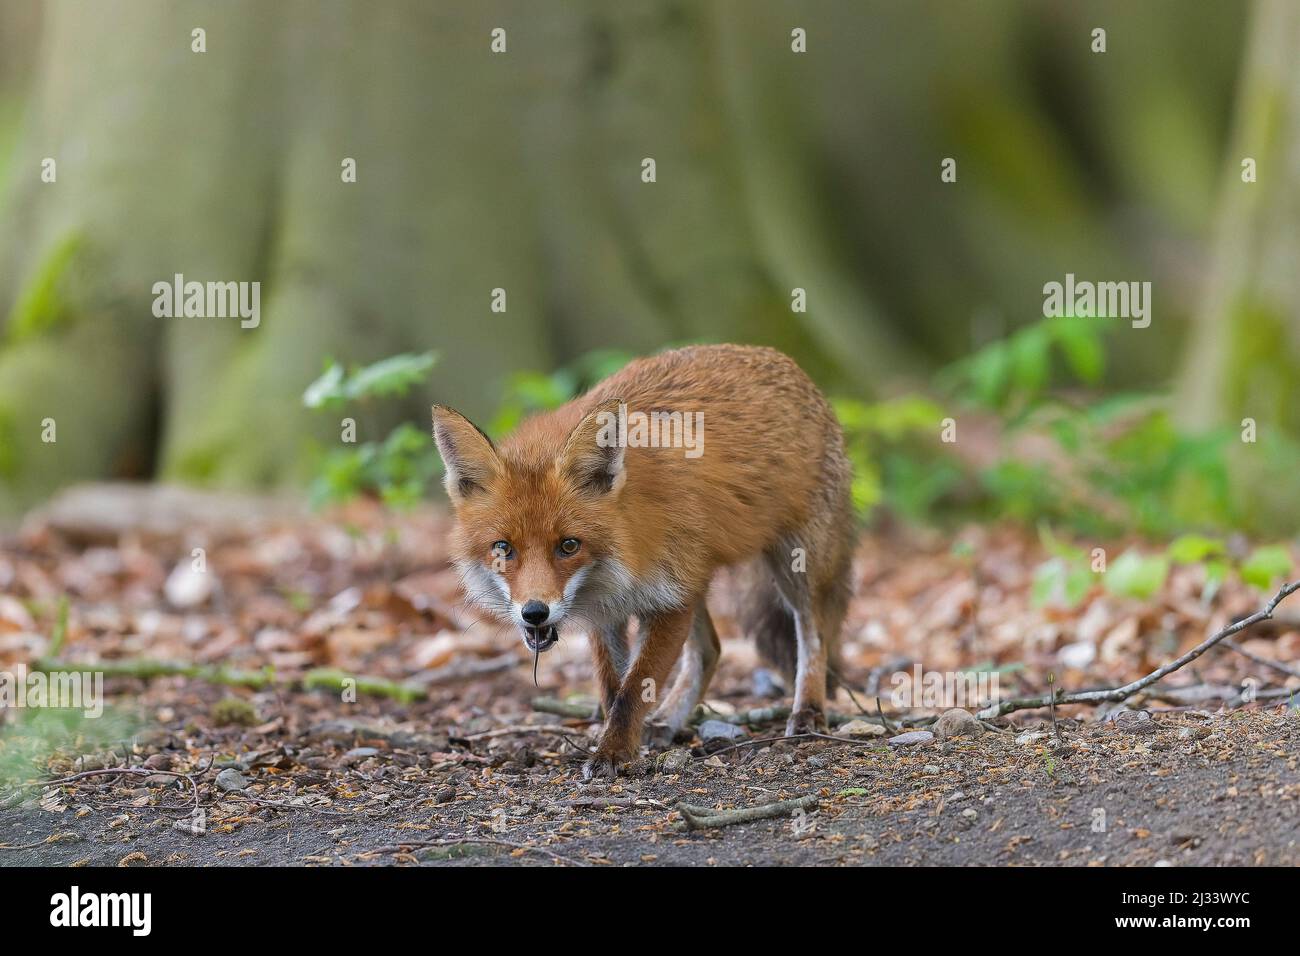 Caccia volpe rossa (Vulpes vulpes) di ritorno a cubs in den con il topo catturato in bocca nella foresta in primavera Foto Stock